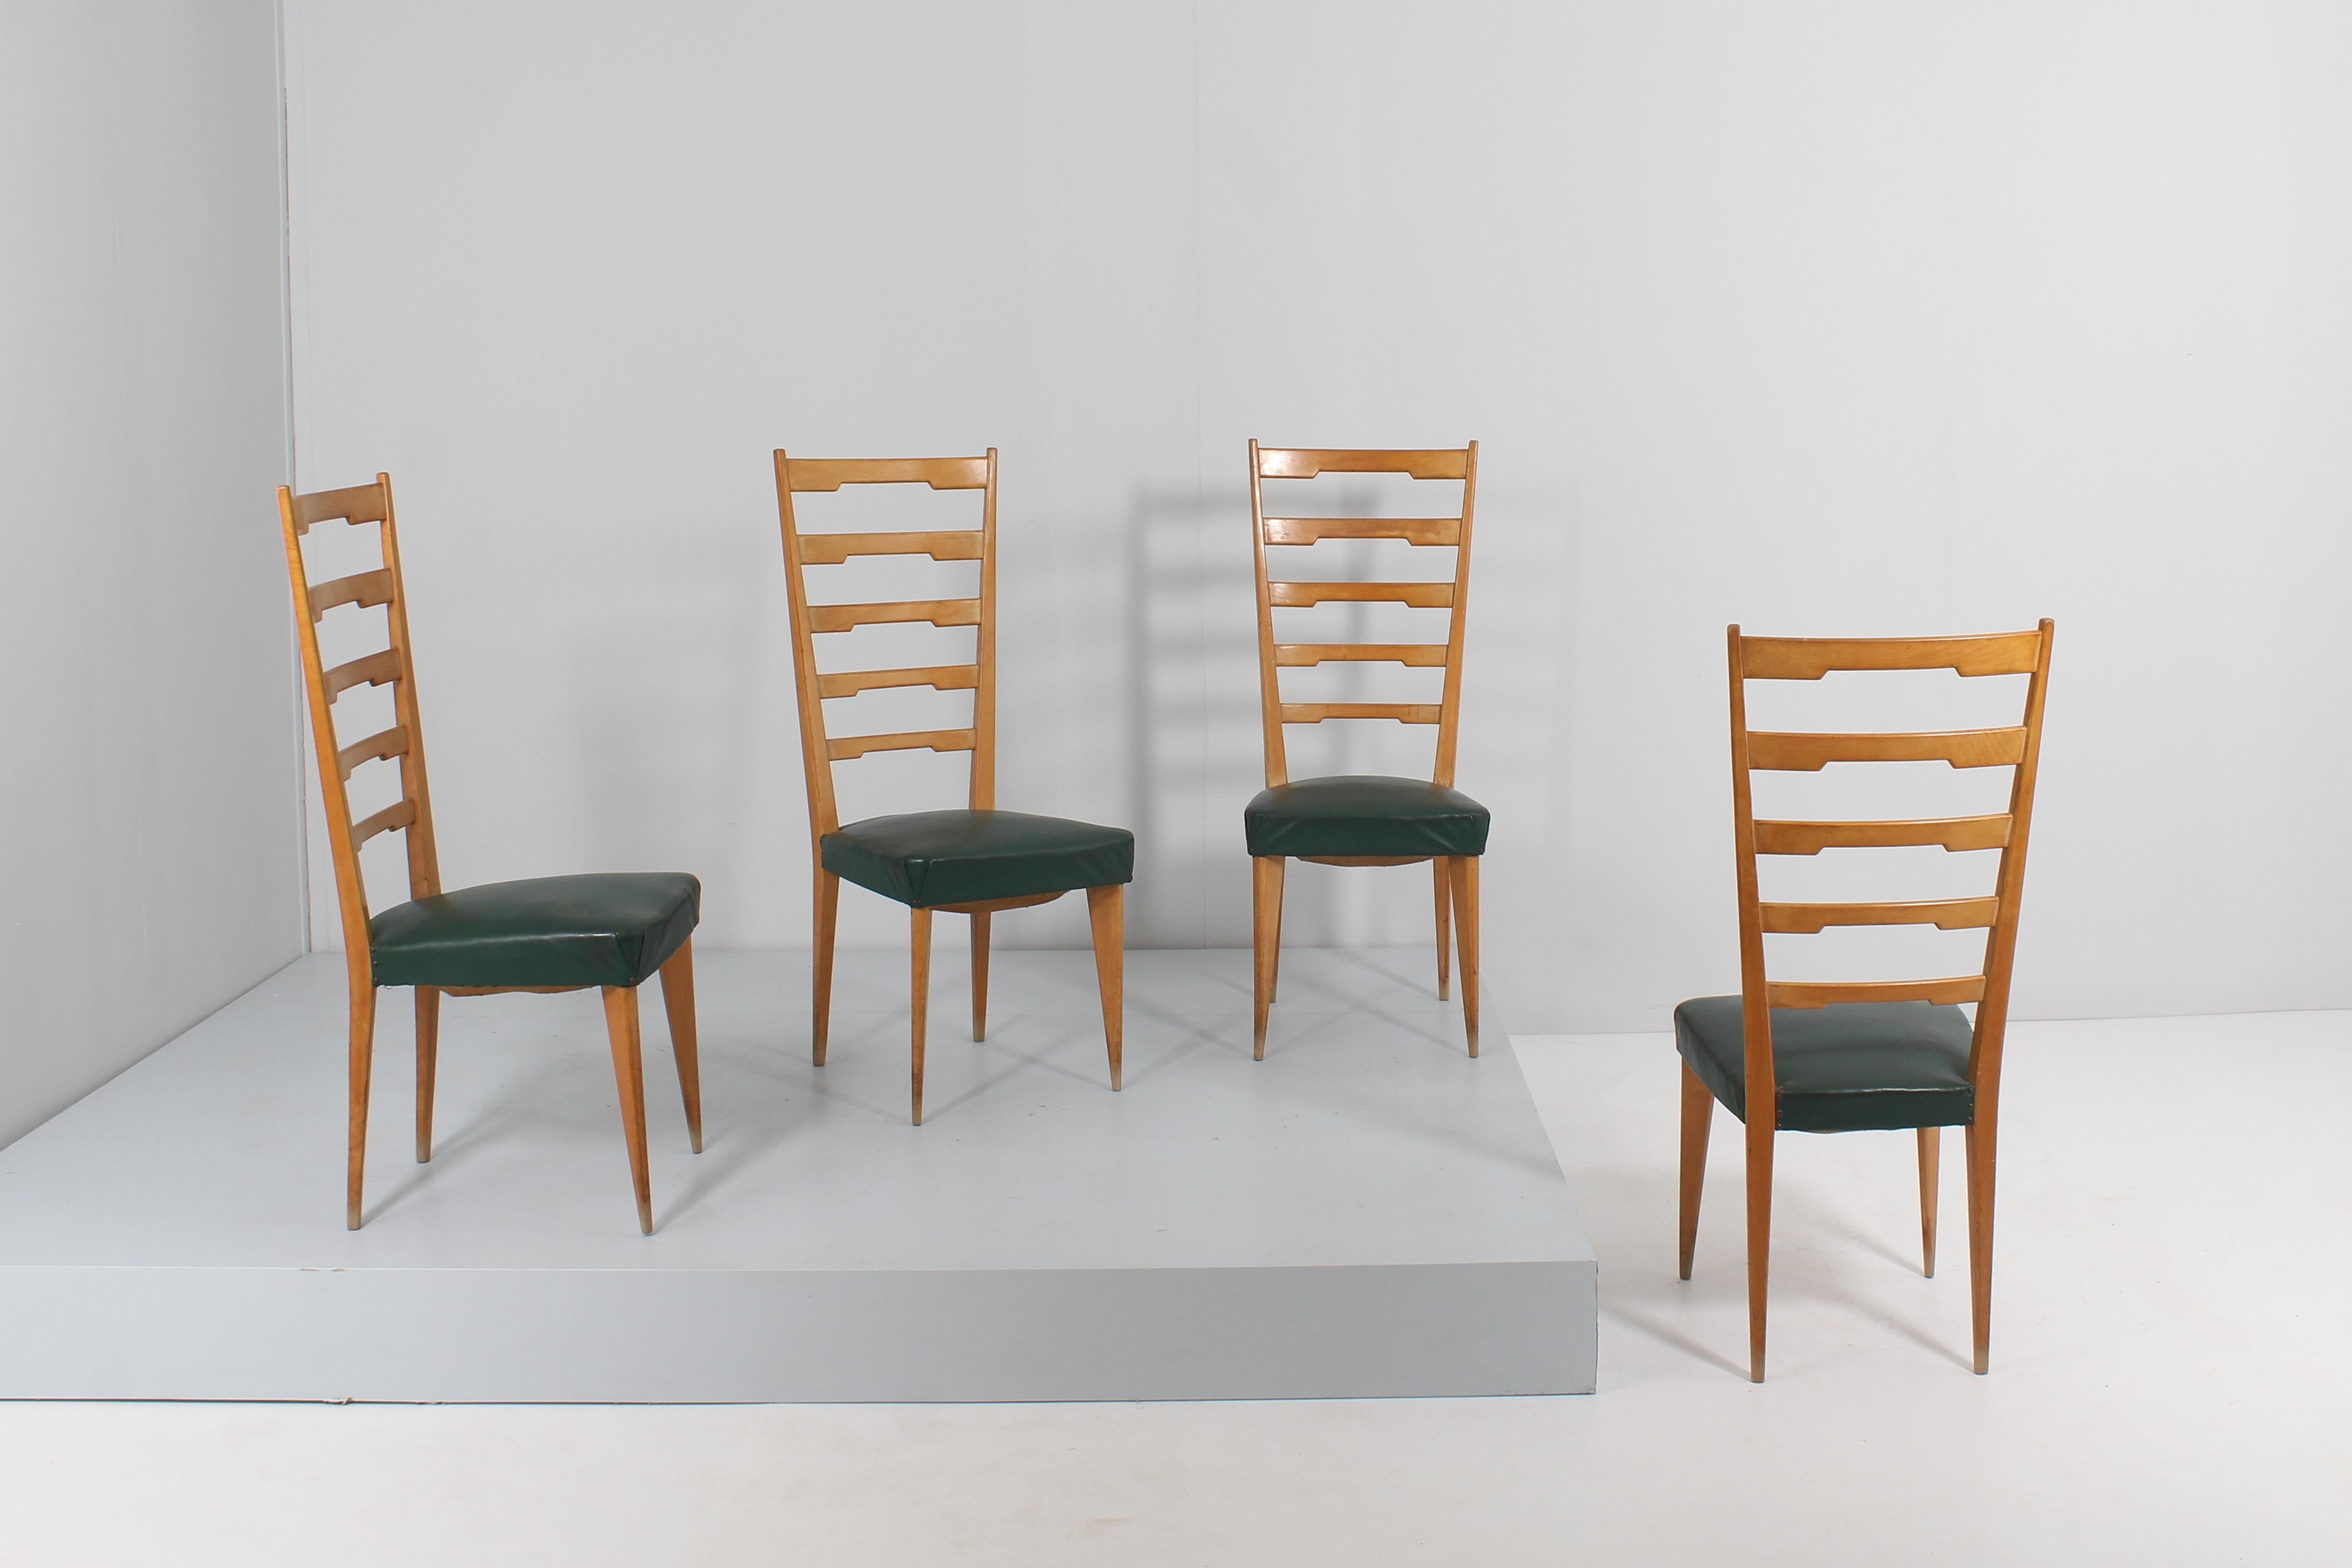 Schönes und elegantes Set von 4 Stühlen aus hellem Holz, mit hoher Rückenlehne, geformten horizontalen Elementen und Stachelbeinen. Der Sitz ist mit dunkelgrünem Synthetik-Skai gefüttert. Italienische Produktion aus den 60er Jahren im Stil von Paolo